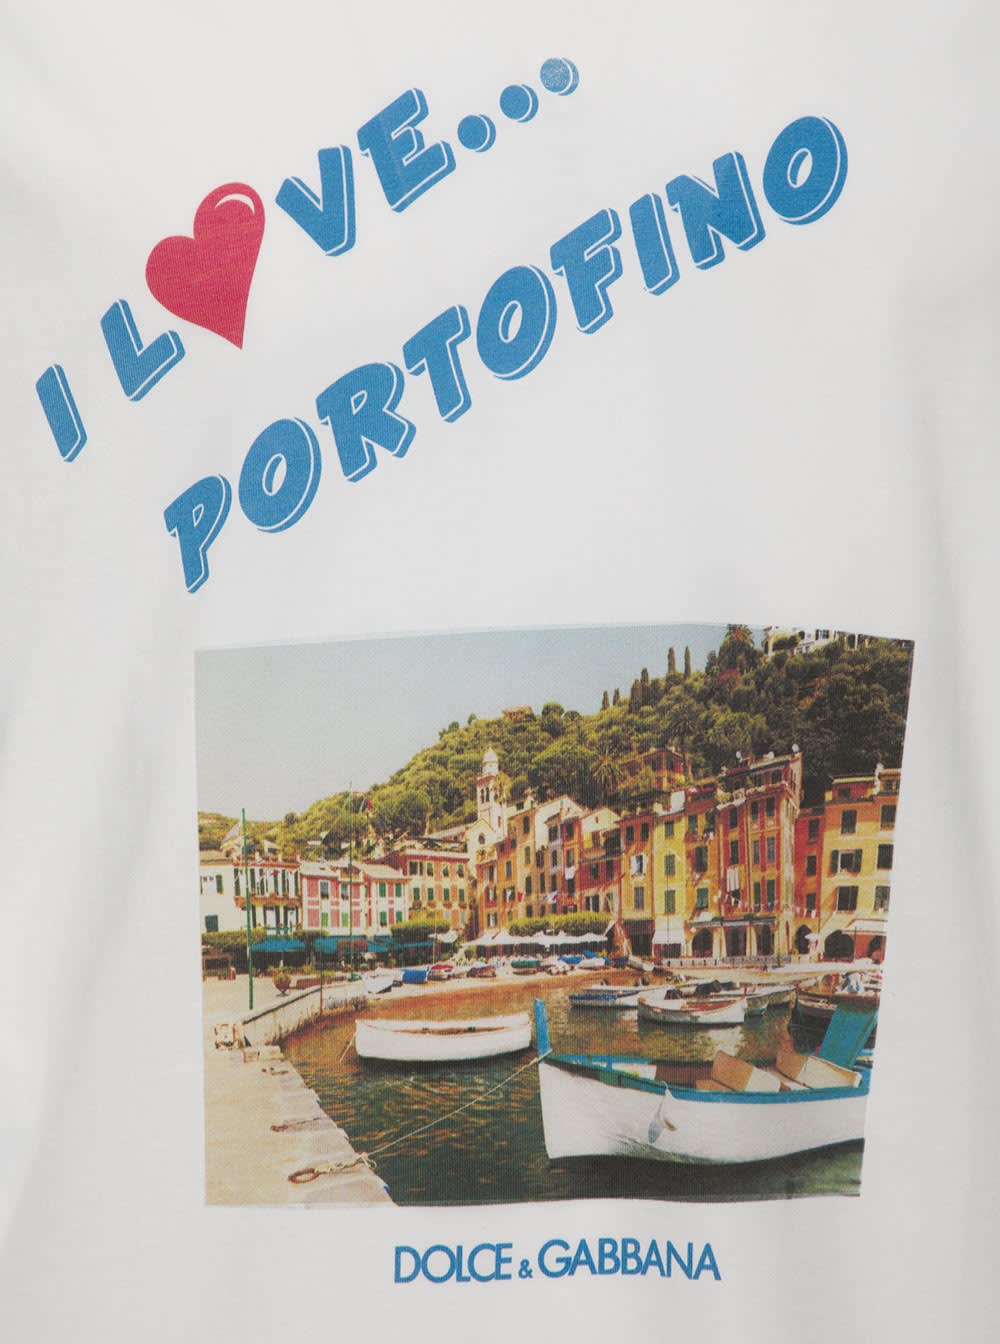 Shop Dolce & Gabbana White T-shirt With I Love Portofino Print In Cotton Man